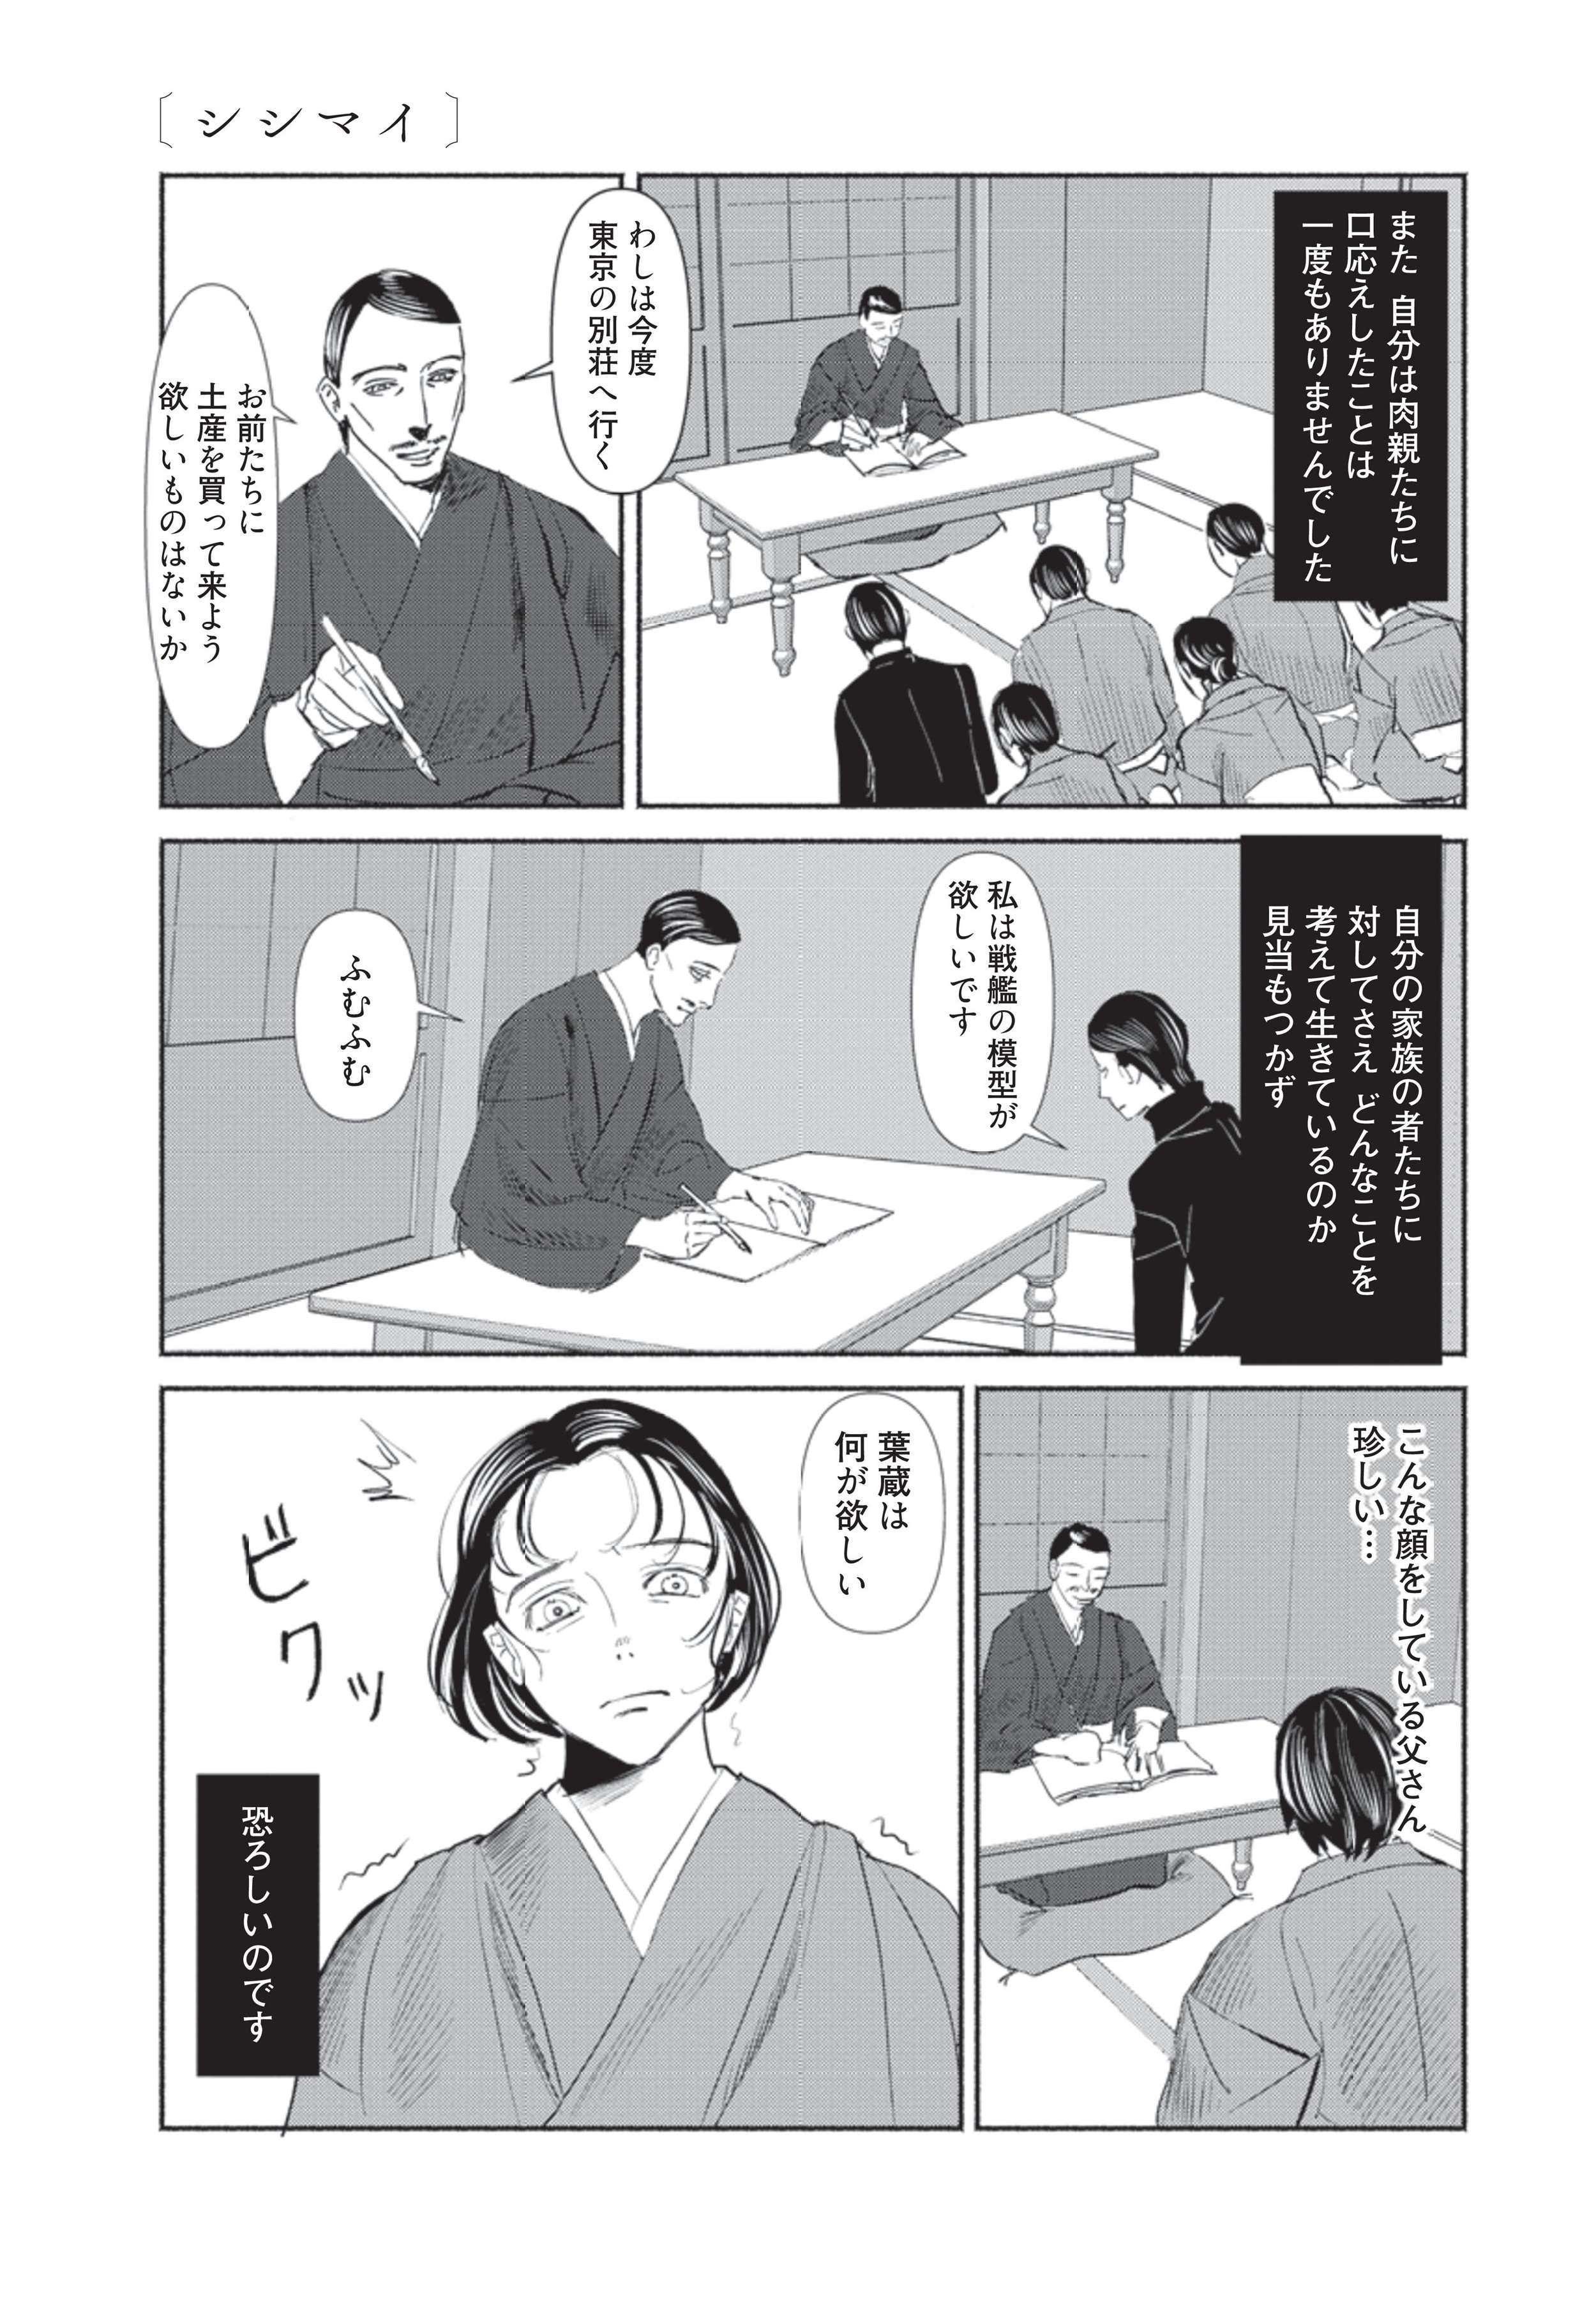 ほしいものを答えられない... 家族からも理解されずに少年は恐怖する／漫画 人間失格 manga_ningenshikkaku3-1.jpg